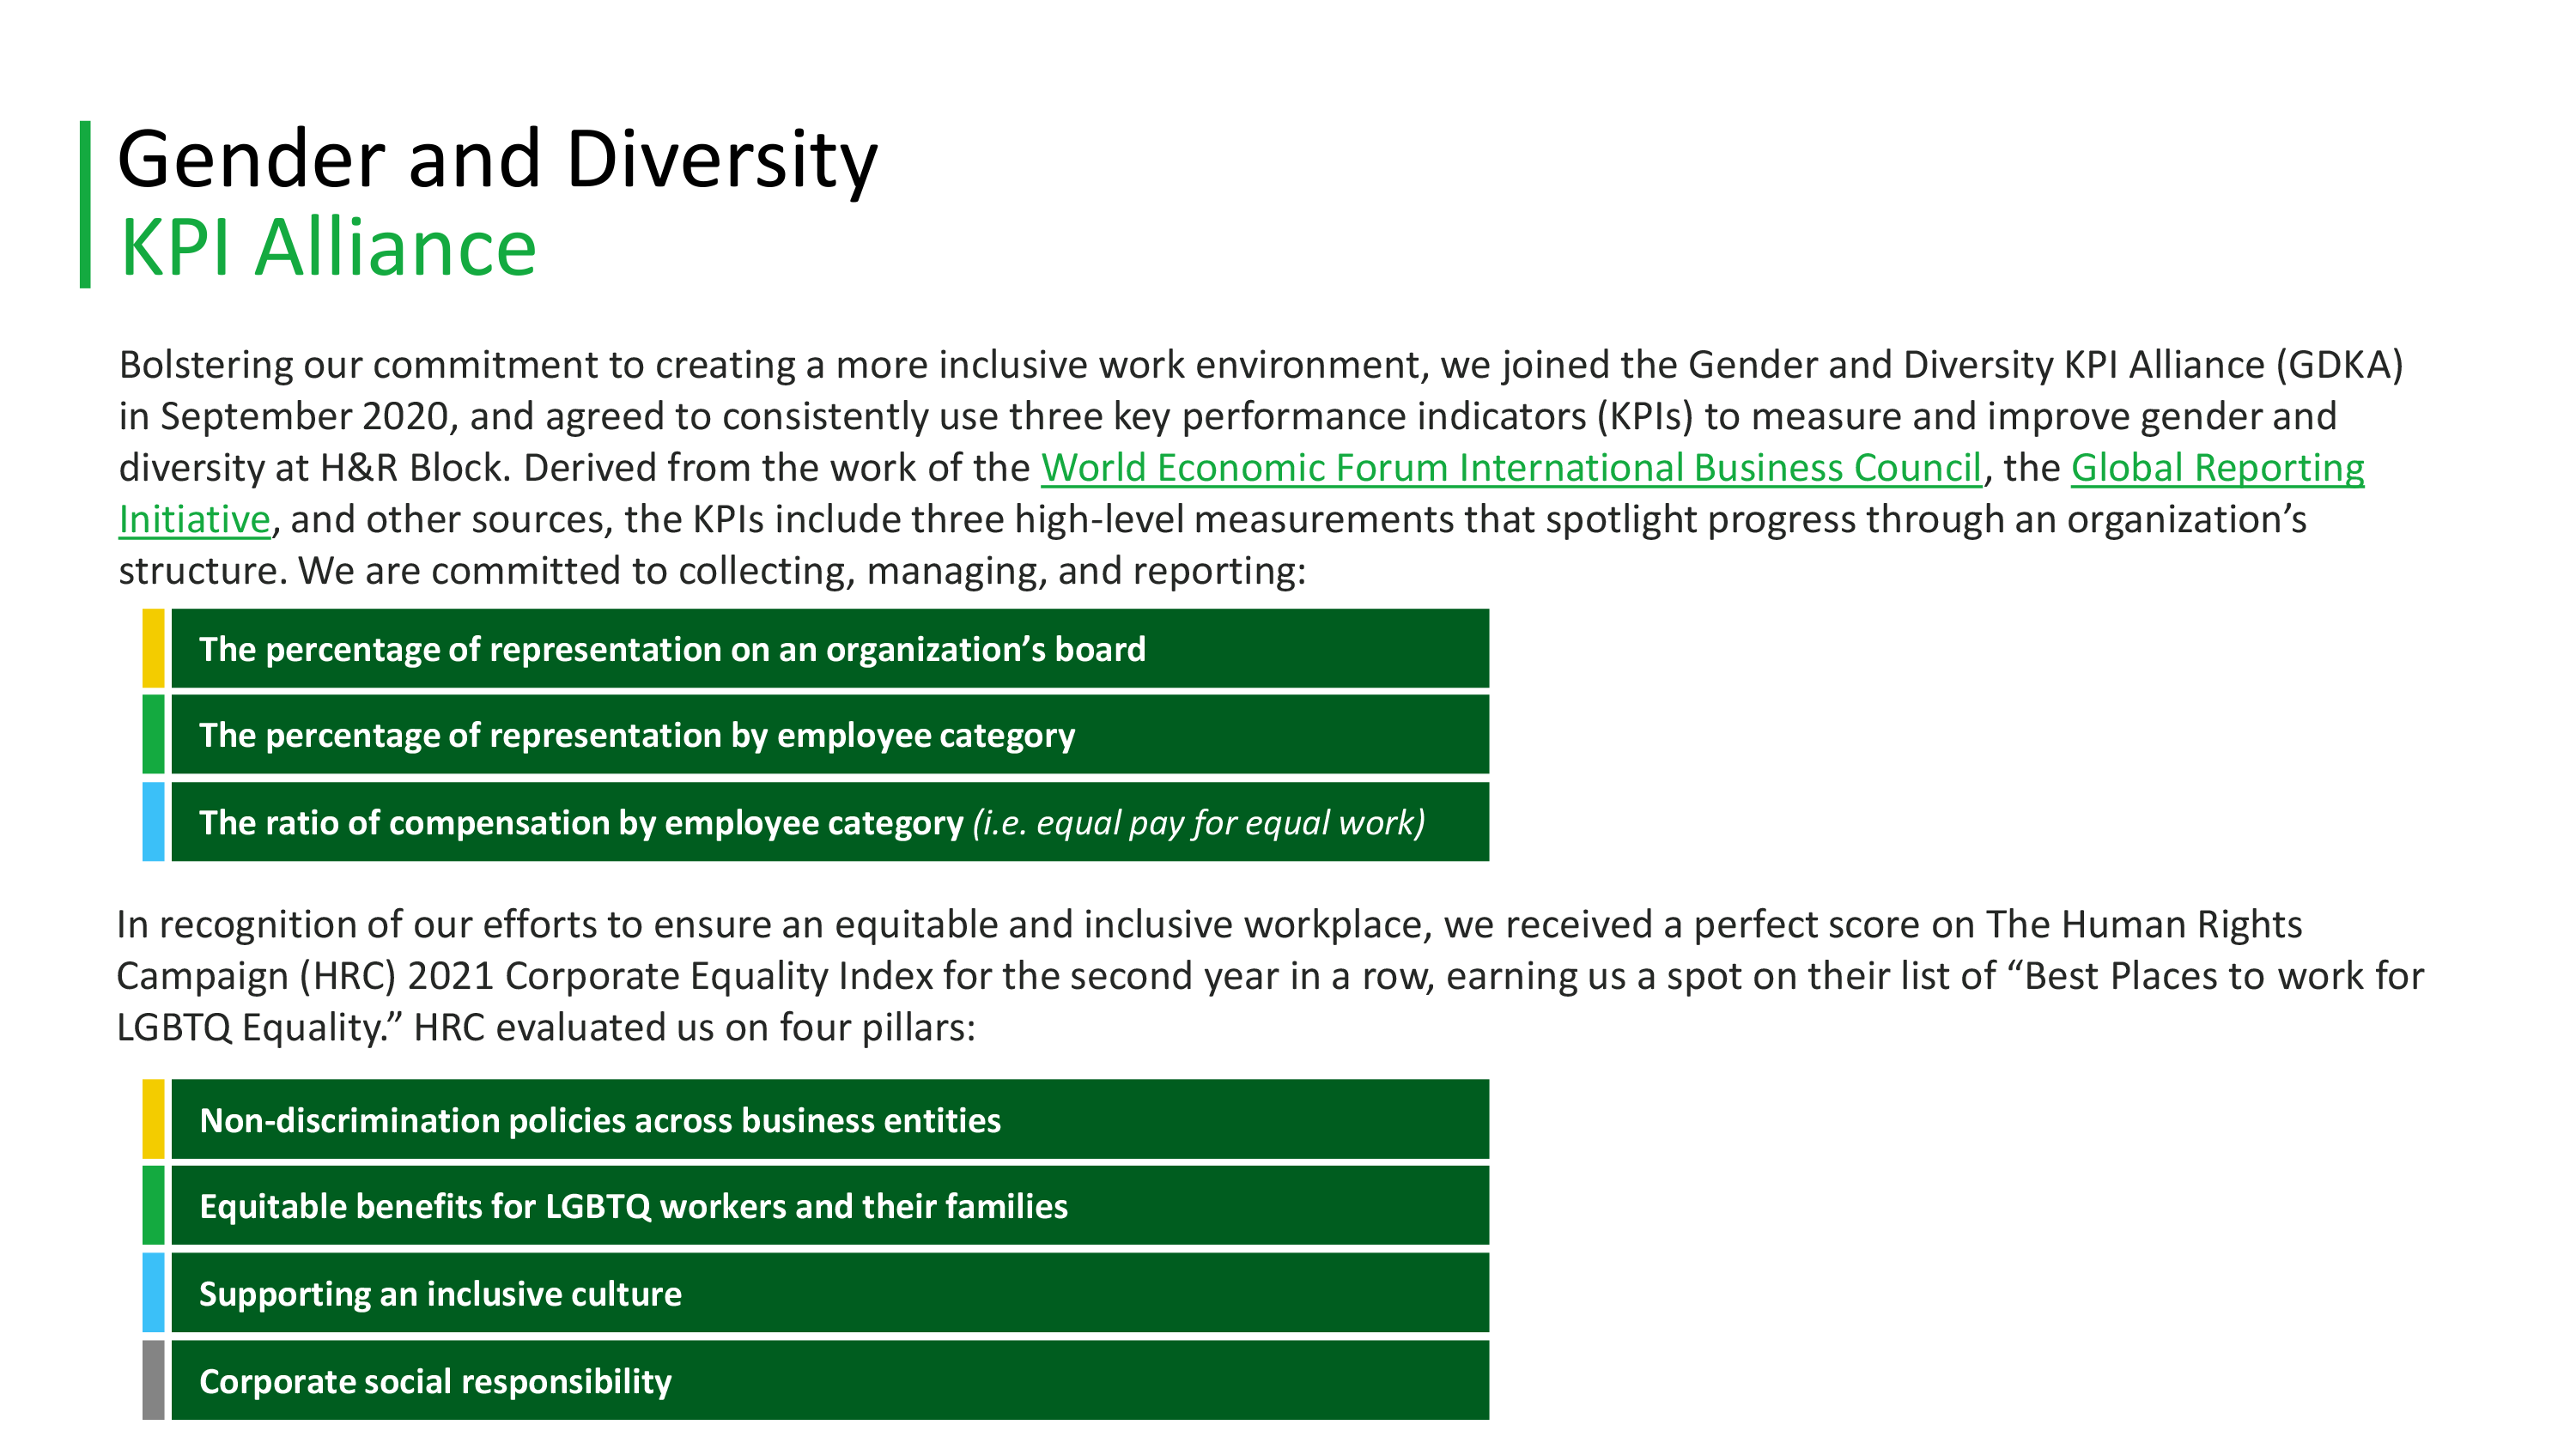 Gender and Diversity KPI Alliance